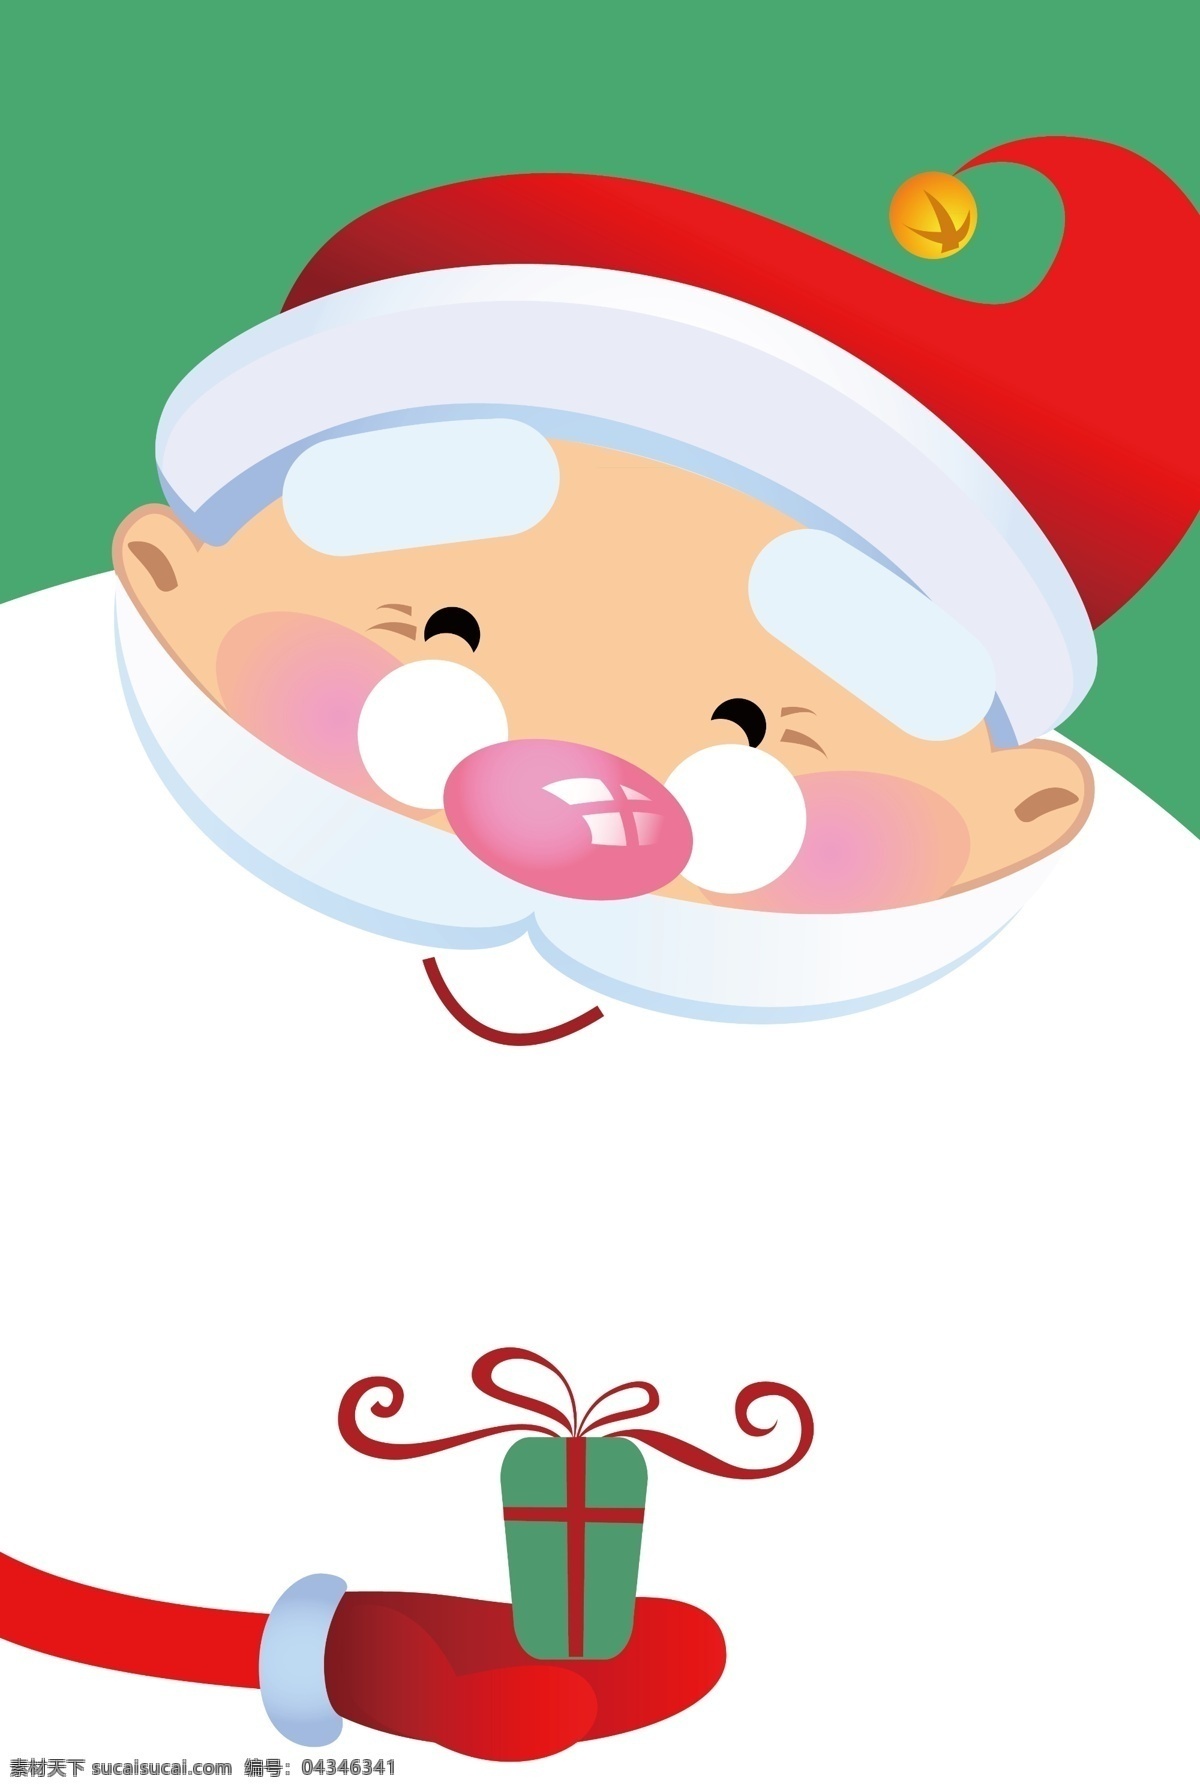 简约 可爱 小 清新 圣诞节 背景 图 红色 卡通 圣诞 平安夜 电商 海报 淘宝 天猫 banner 鹿子 圣诞老人 下雪